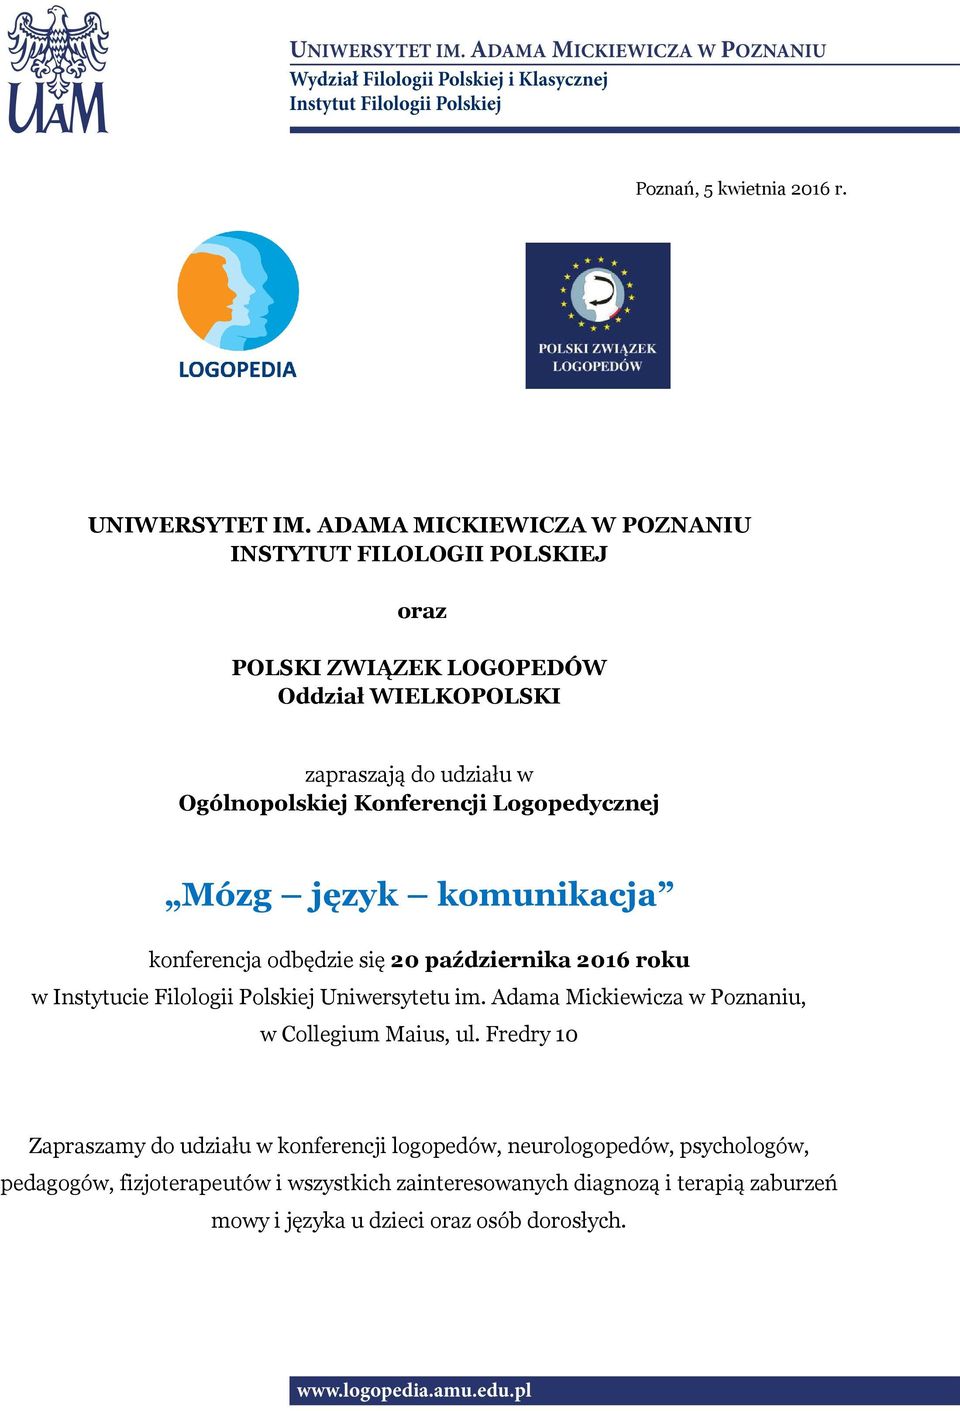 Konferencji Logopedycznej Mózg język komunikacja konferencja odbędzie się 20 października 2016 roku w Instytucie Filologii Polskiej Uniwersytetu im.